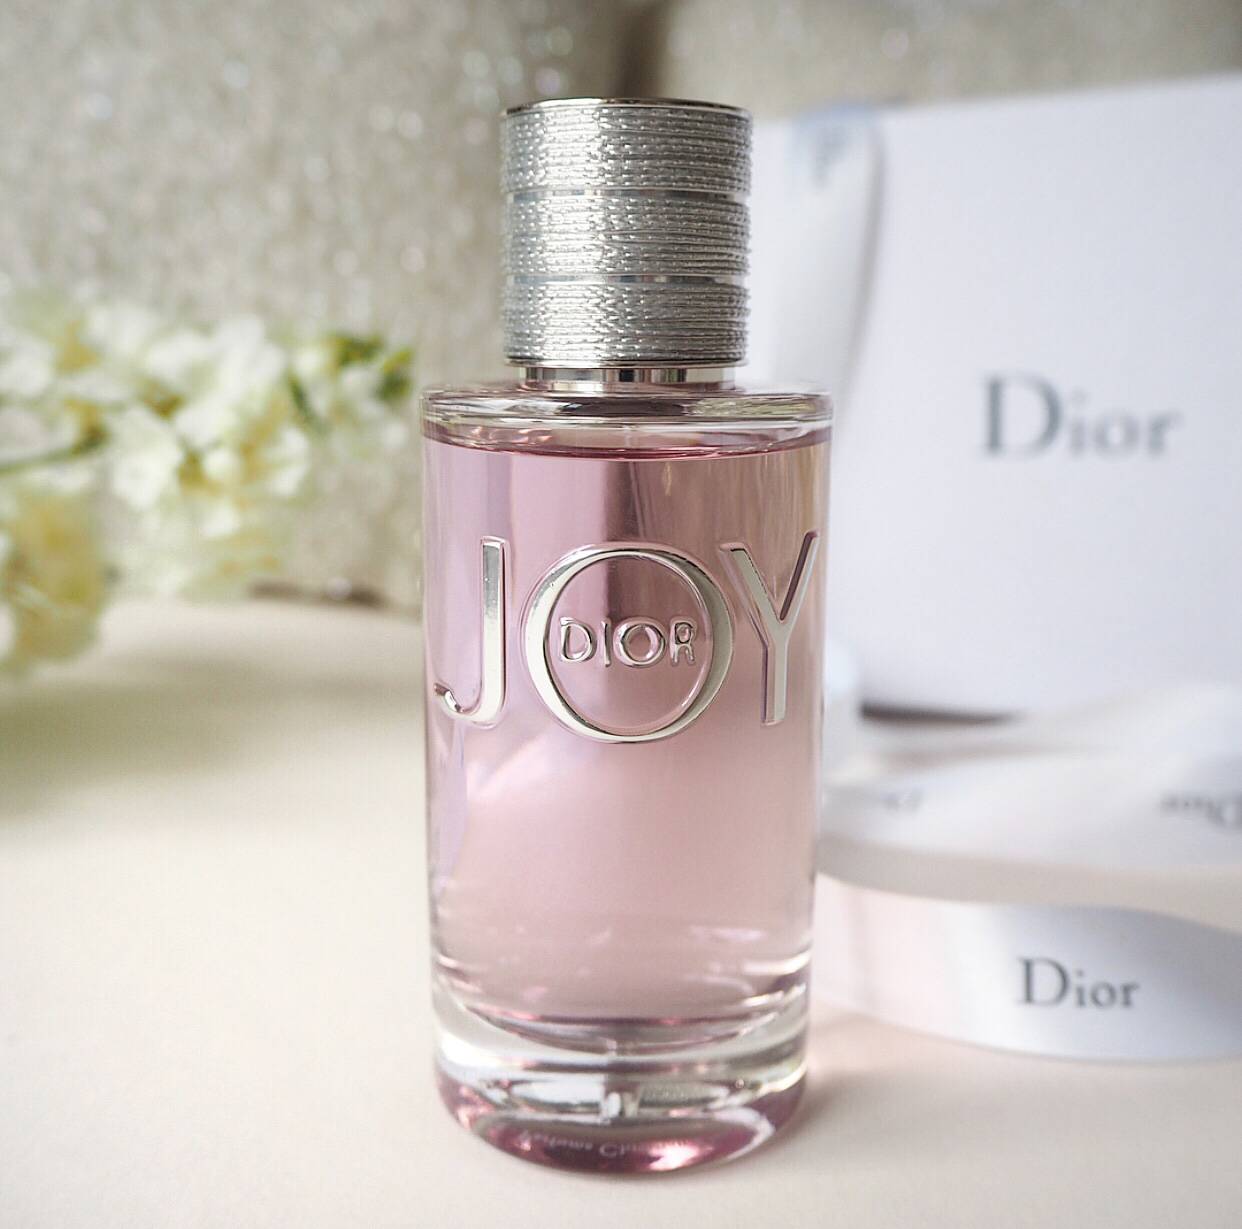 dior joy perfume duty free